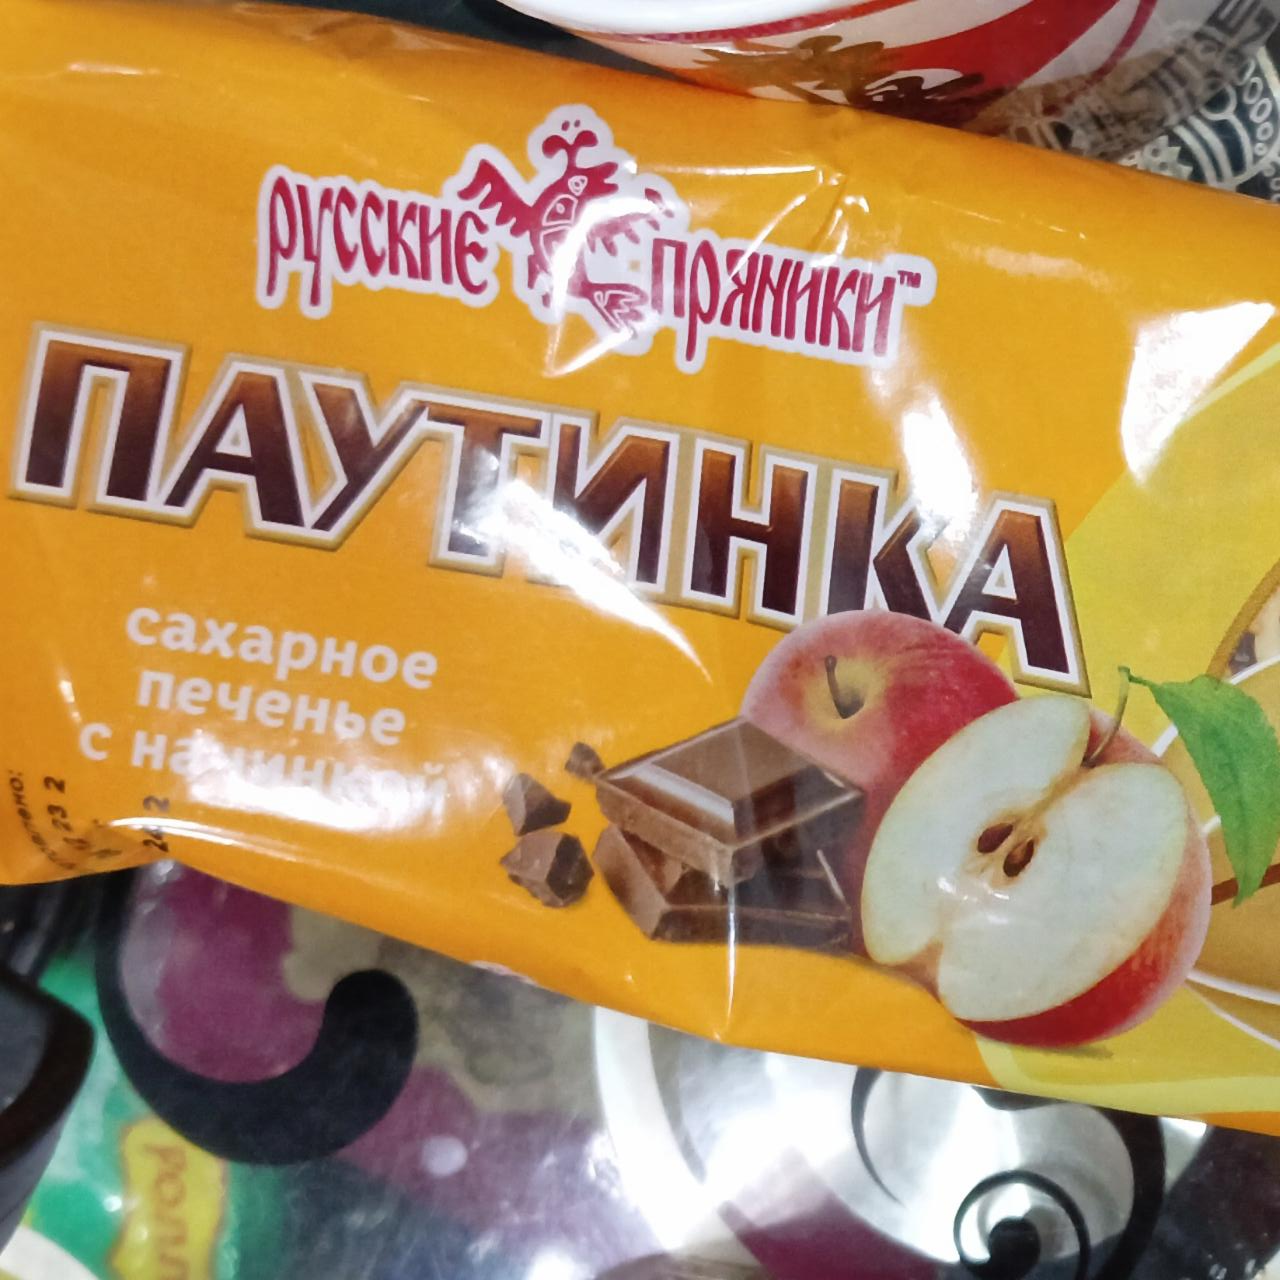 Фото - Паутинка сахарное печенье с начинкой Русские пряники